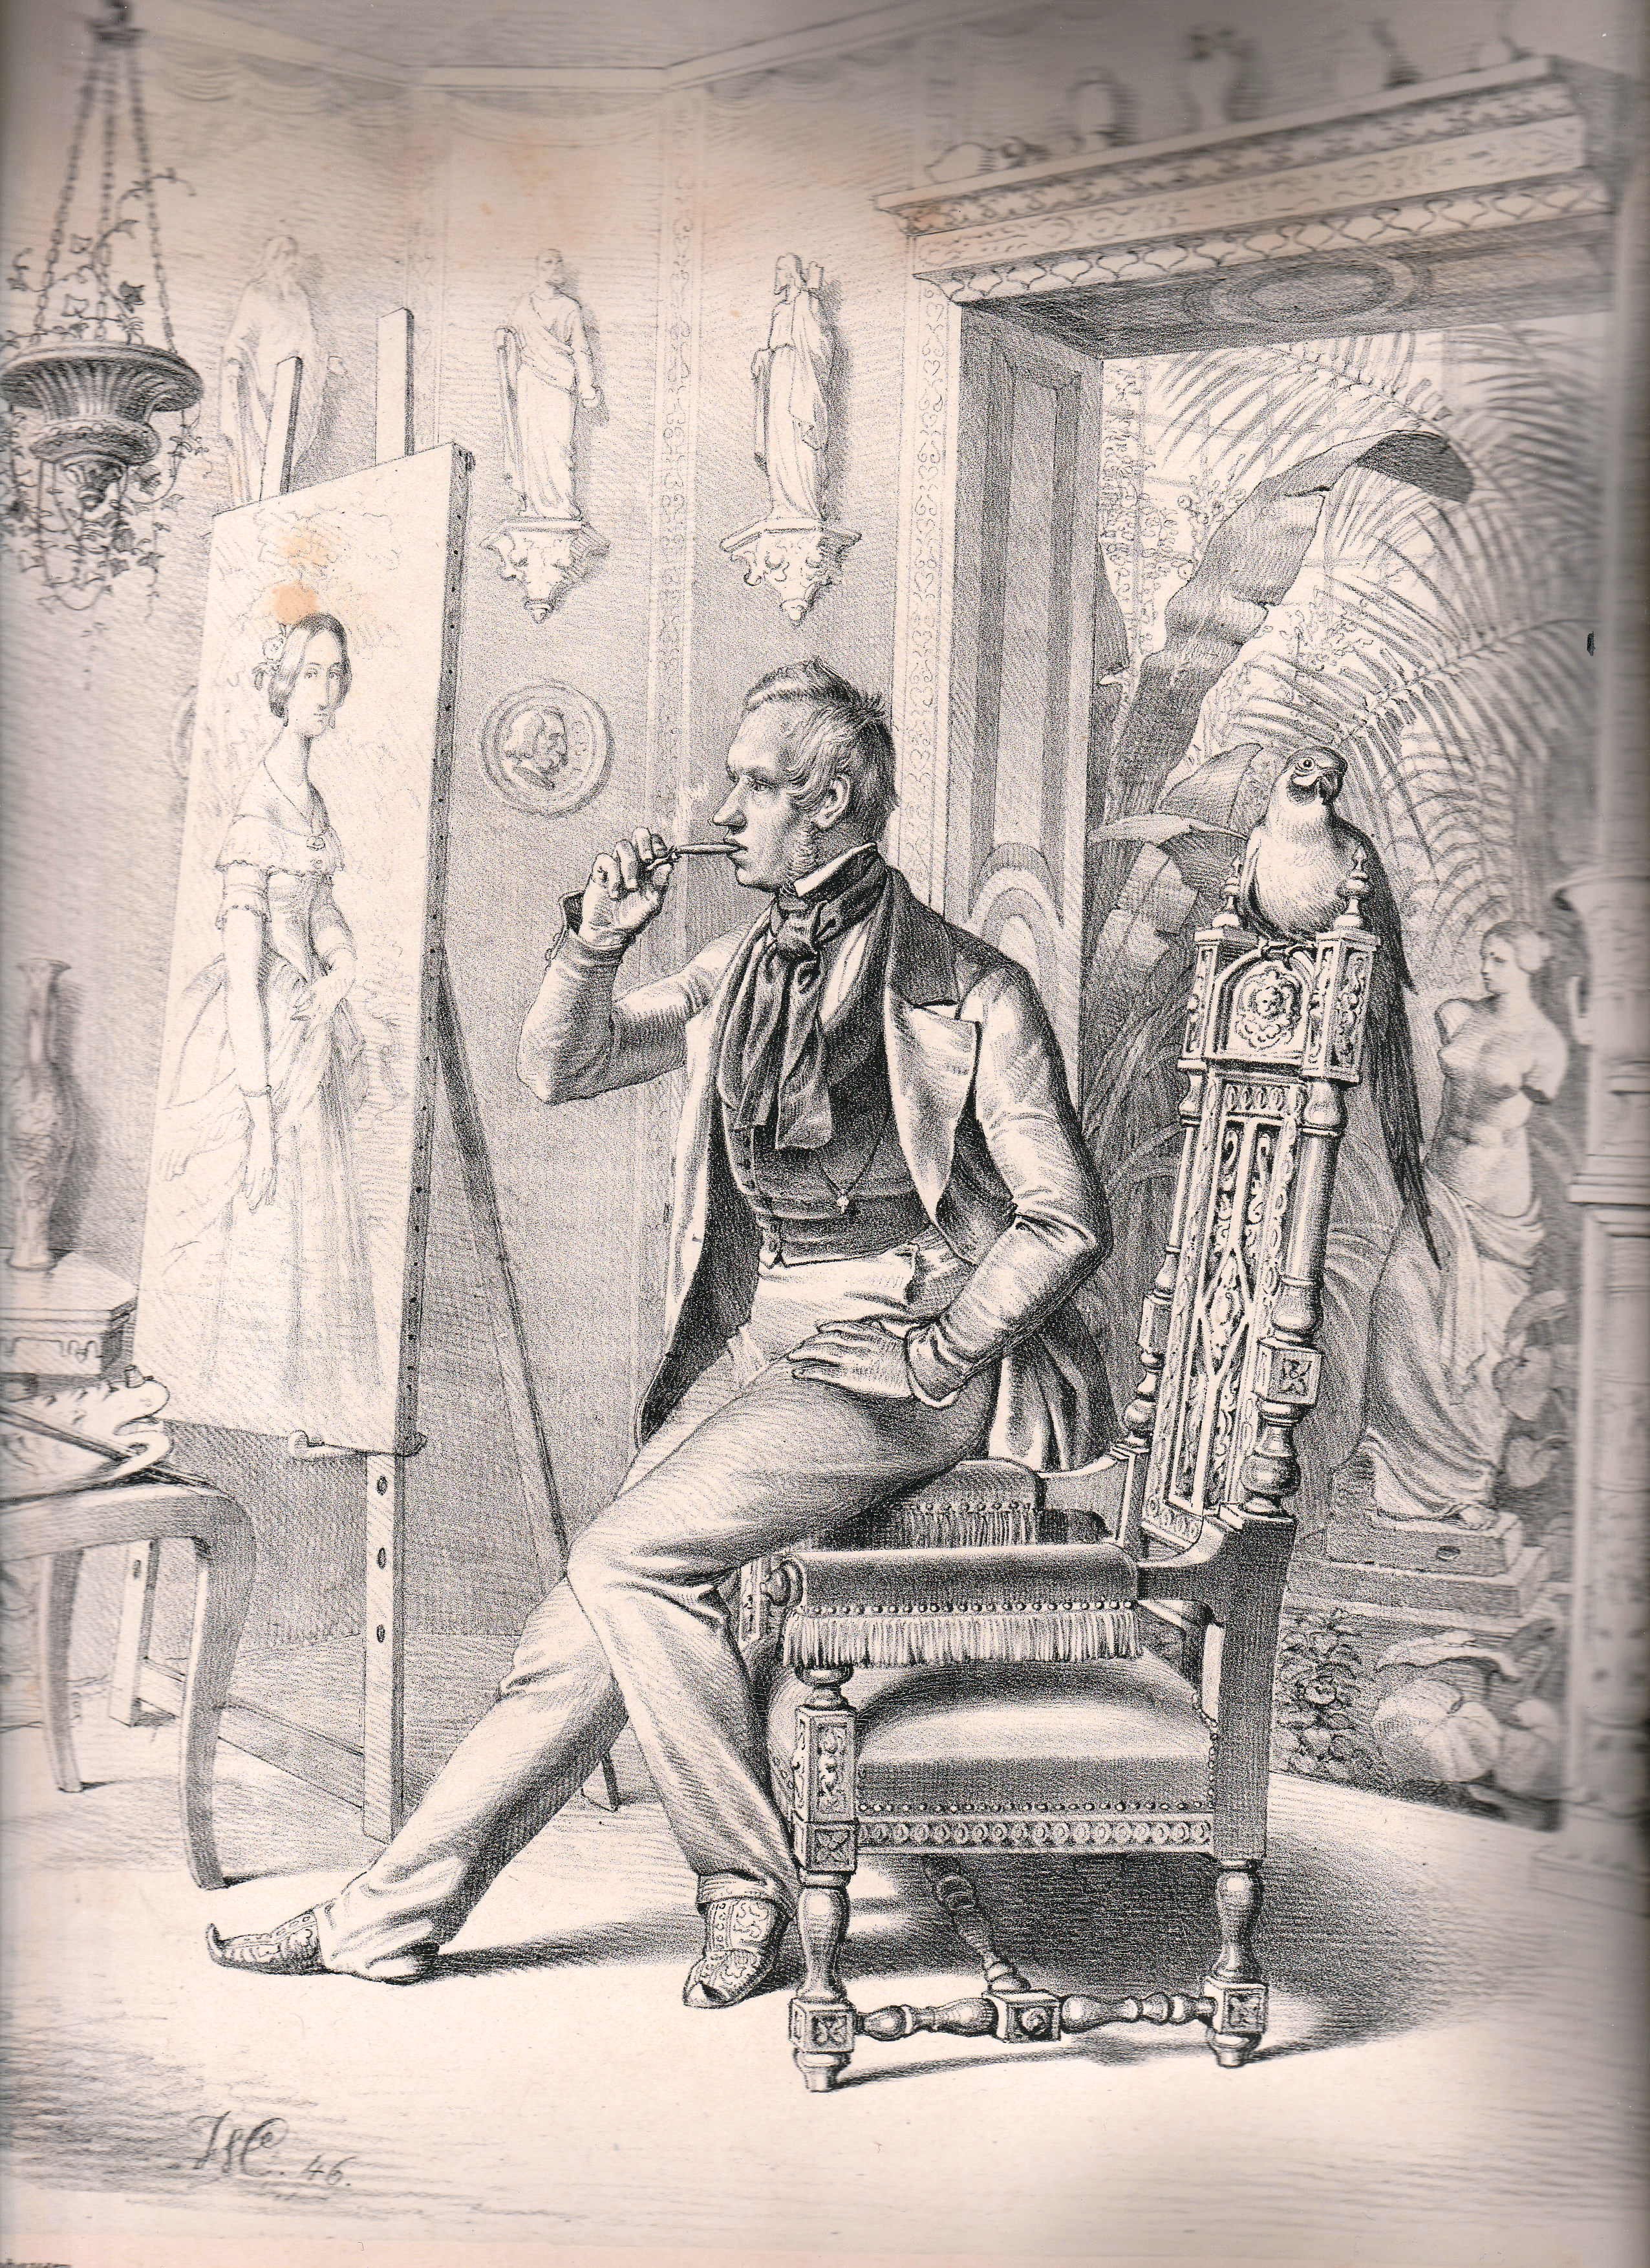 Ganzfigurporträt von Karl Ferdinand Sohn in seinem Atelier im Mahre 1846, von Wilhelm Camphausen (Schloß Wernigerode GmbH RR-F)